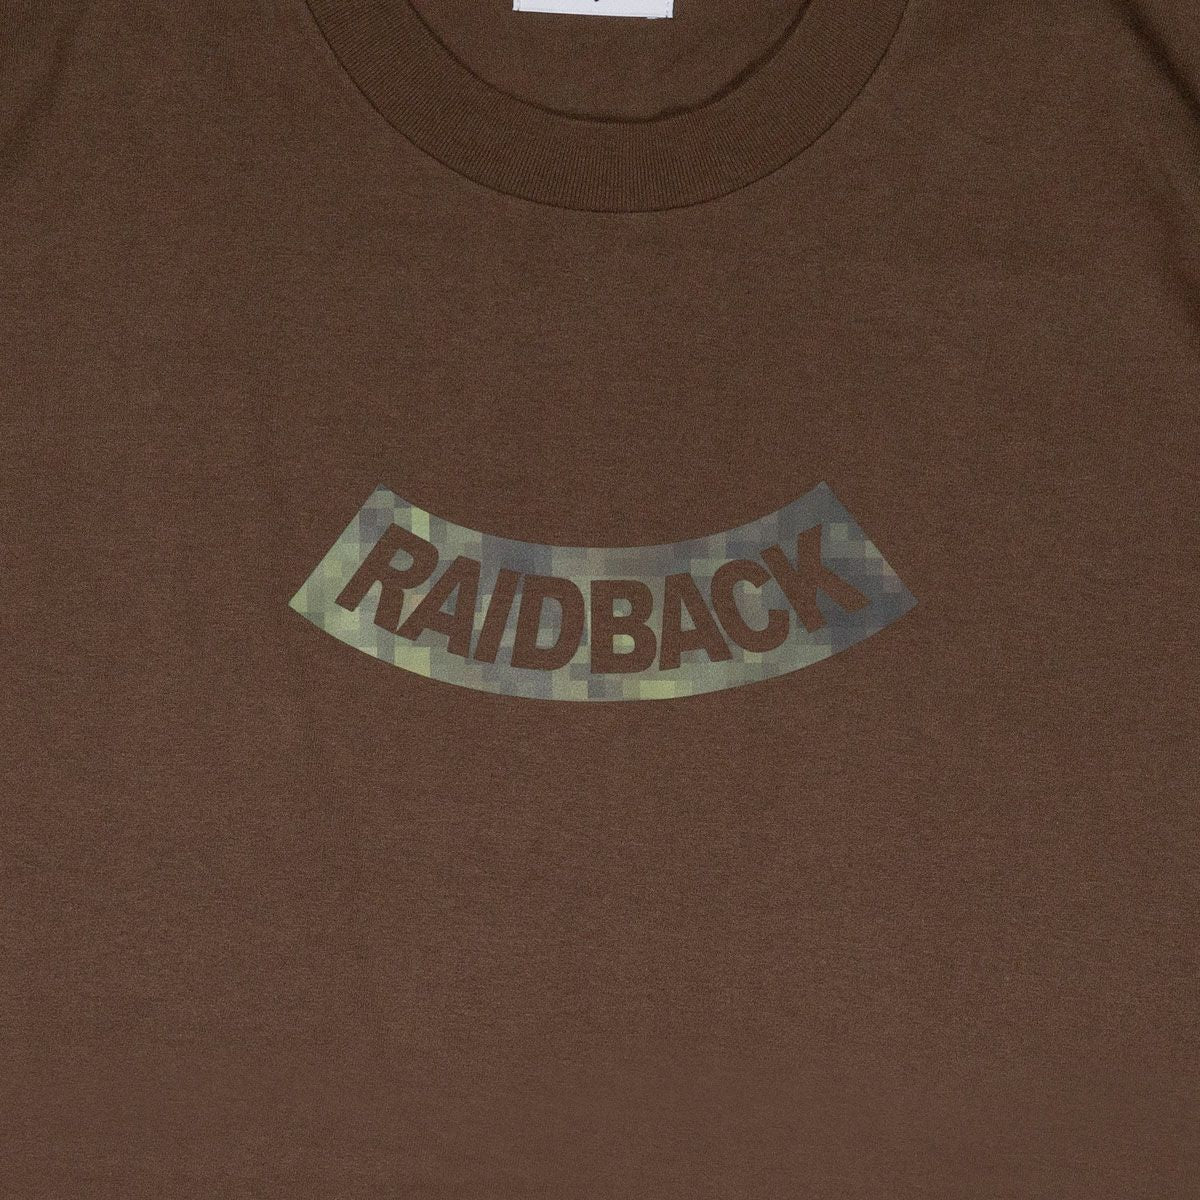 raidback fabric REFLEXION REFLECTOR